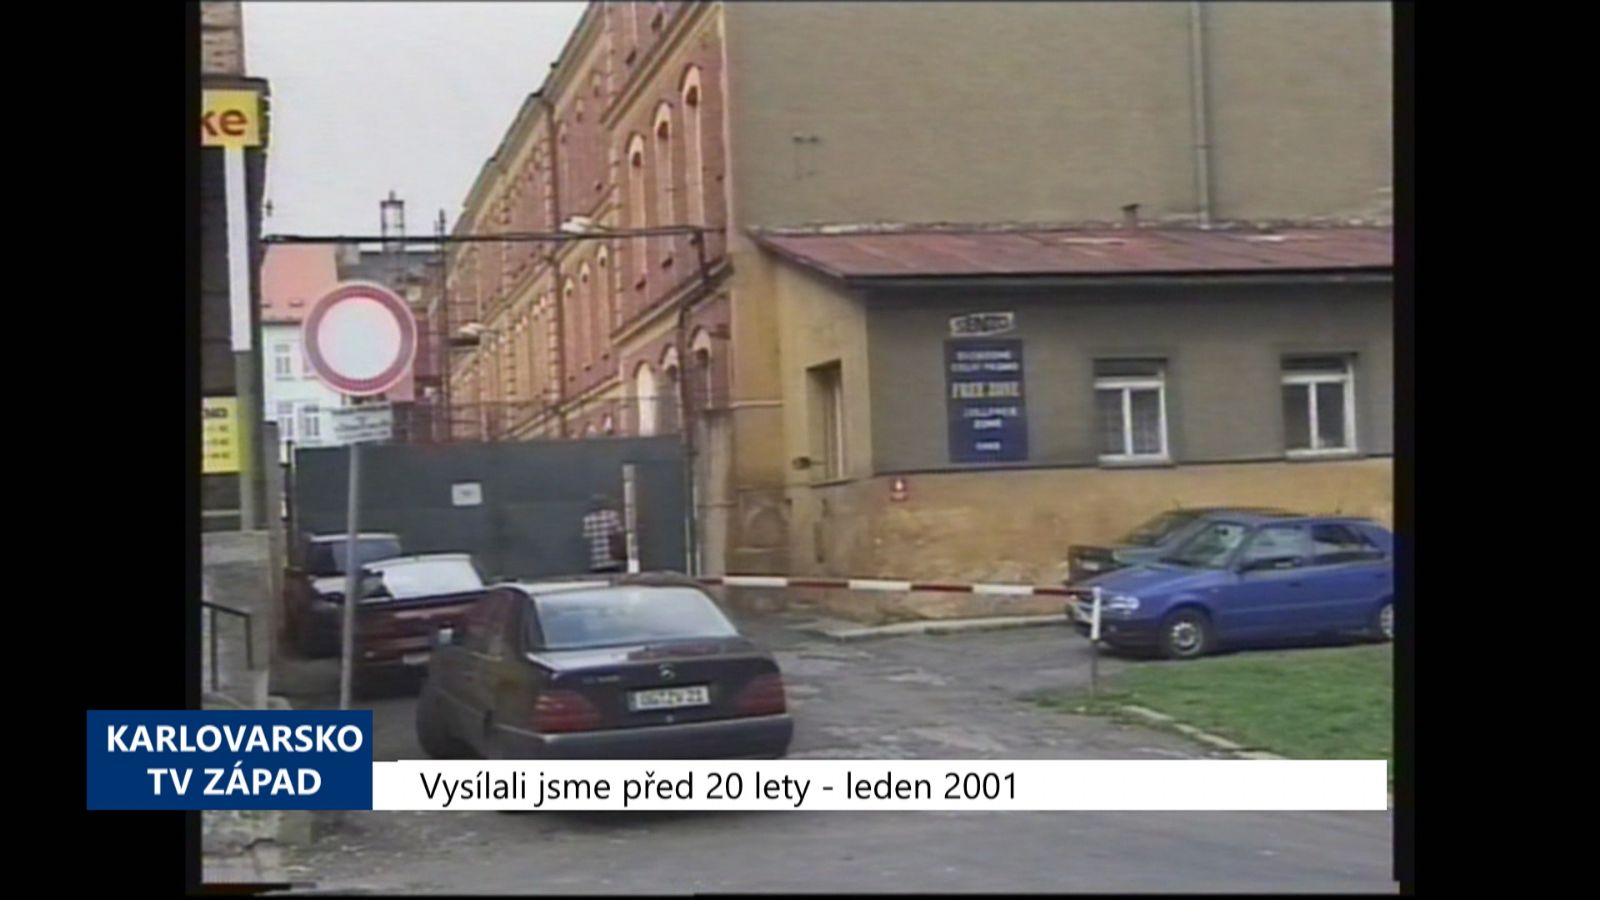 2001 – Cheb: Radní rozhodovali o provozovateli bezcelní zóny (TV Západ)